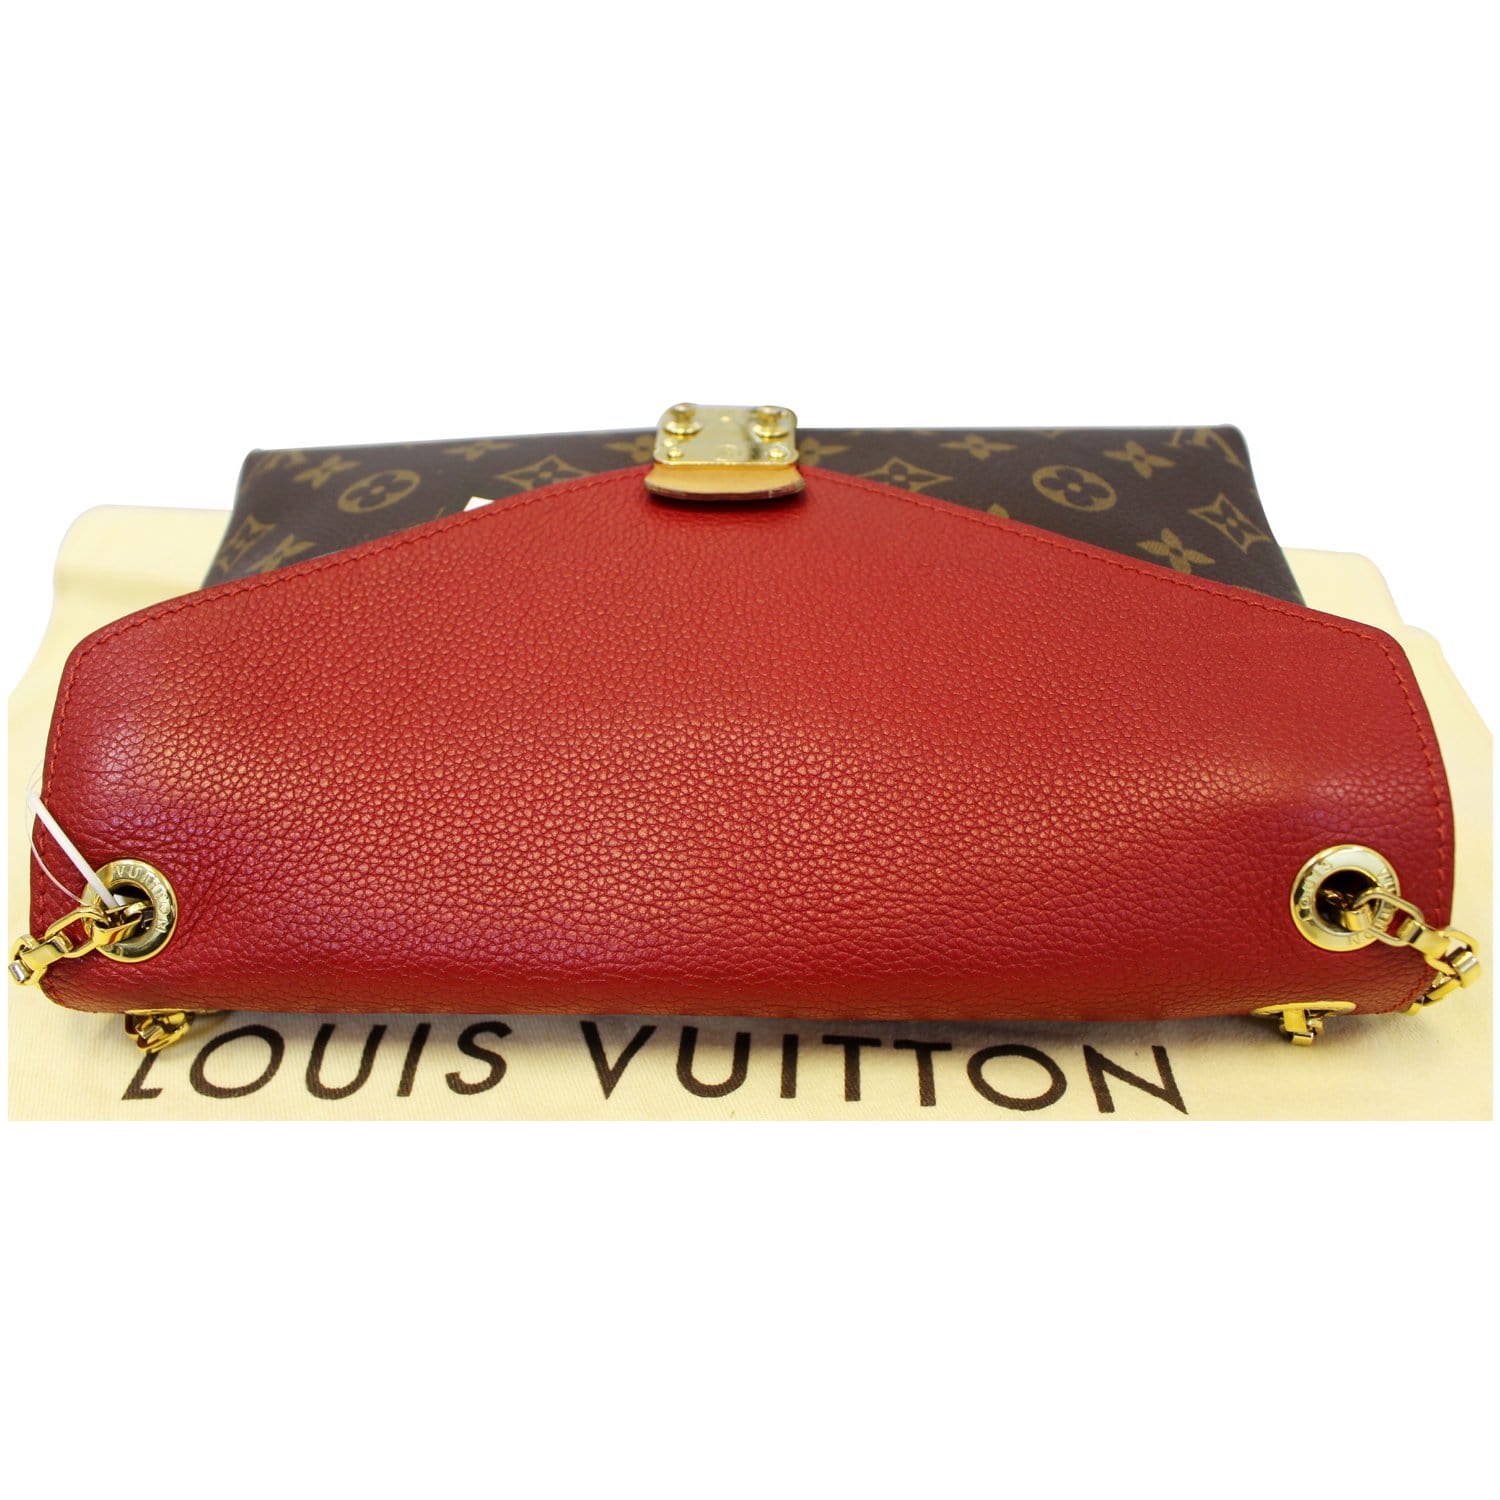 Louis Vuitton Pallas Clutch Monogram Cherry - SOLD